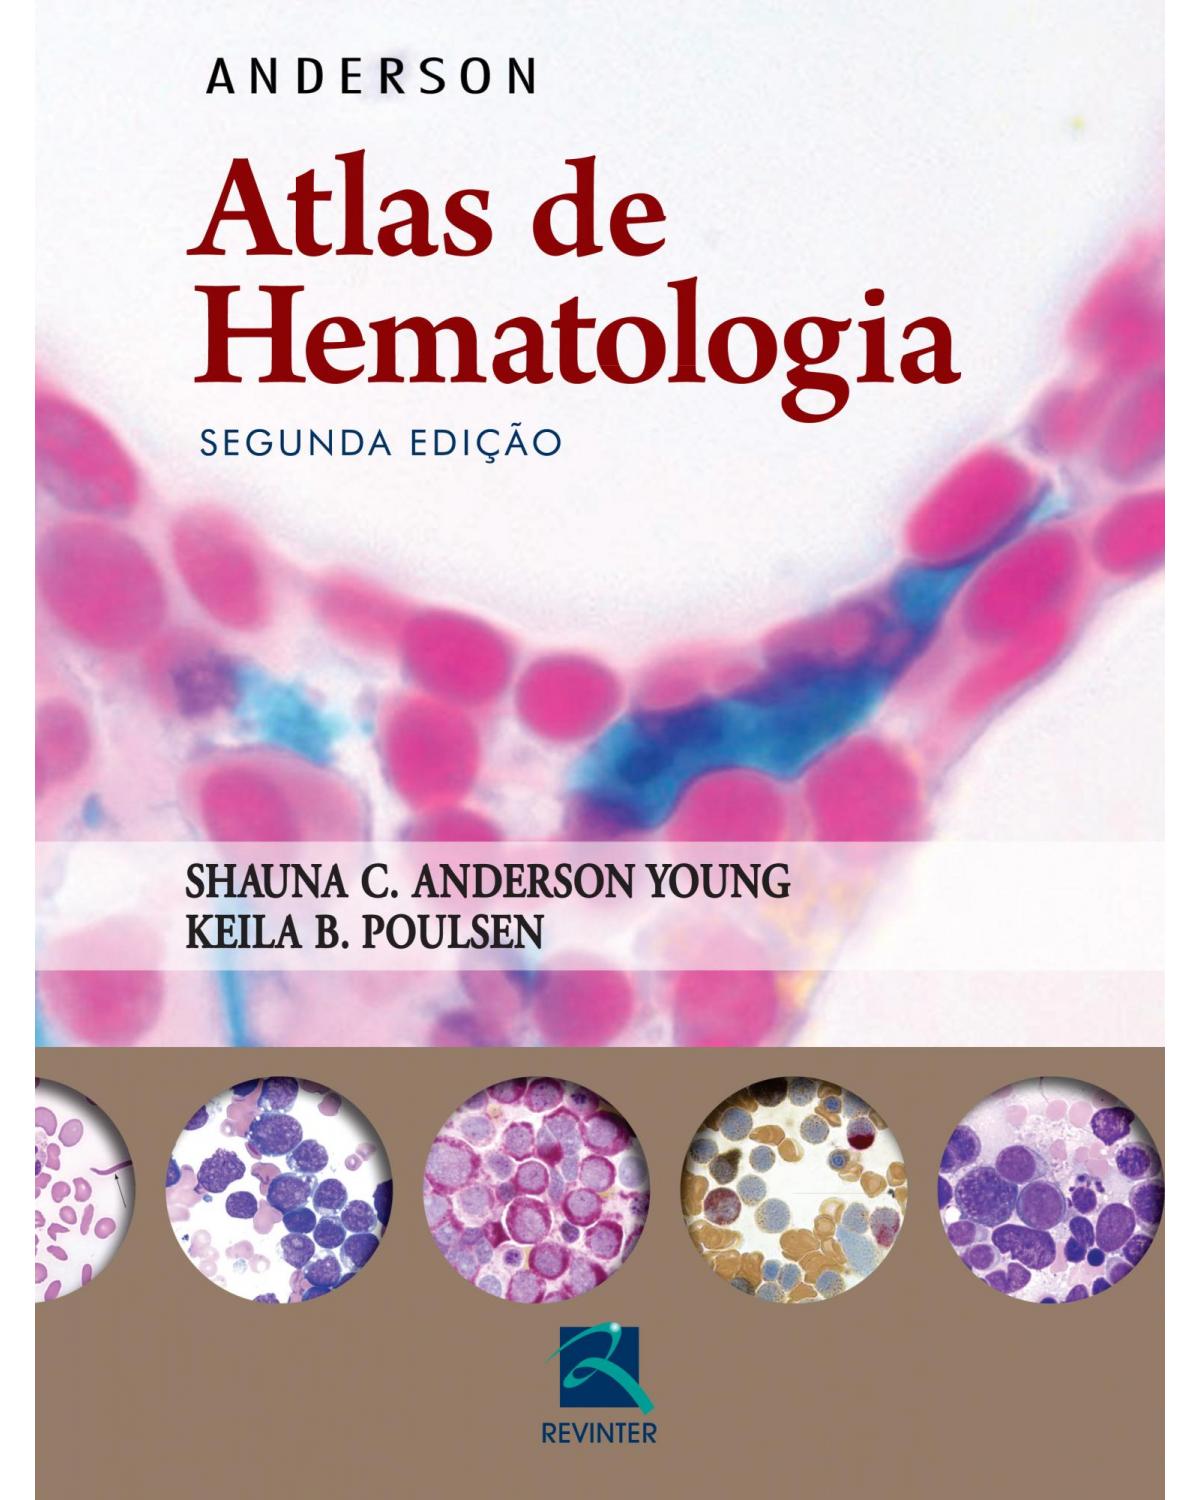 Anderson: Atlas de hematologia - 2ª Edição | 2016